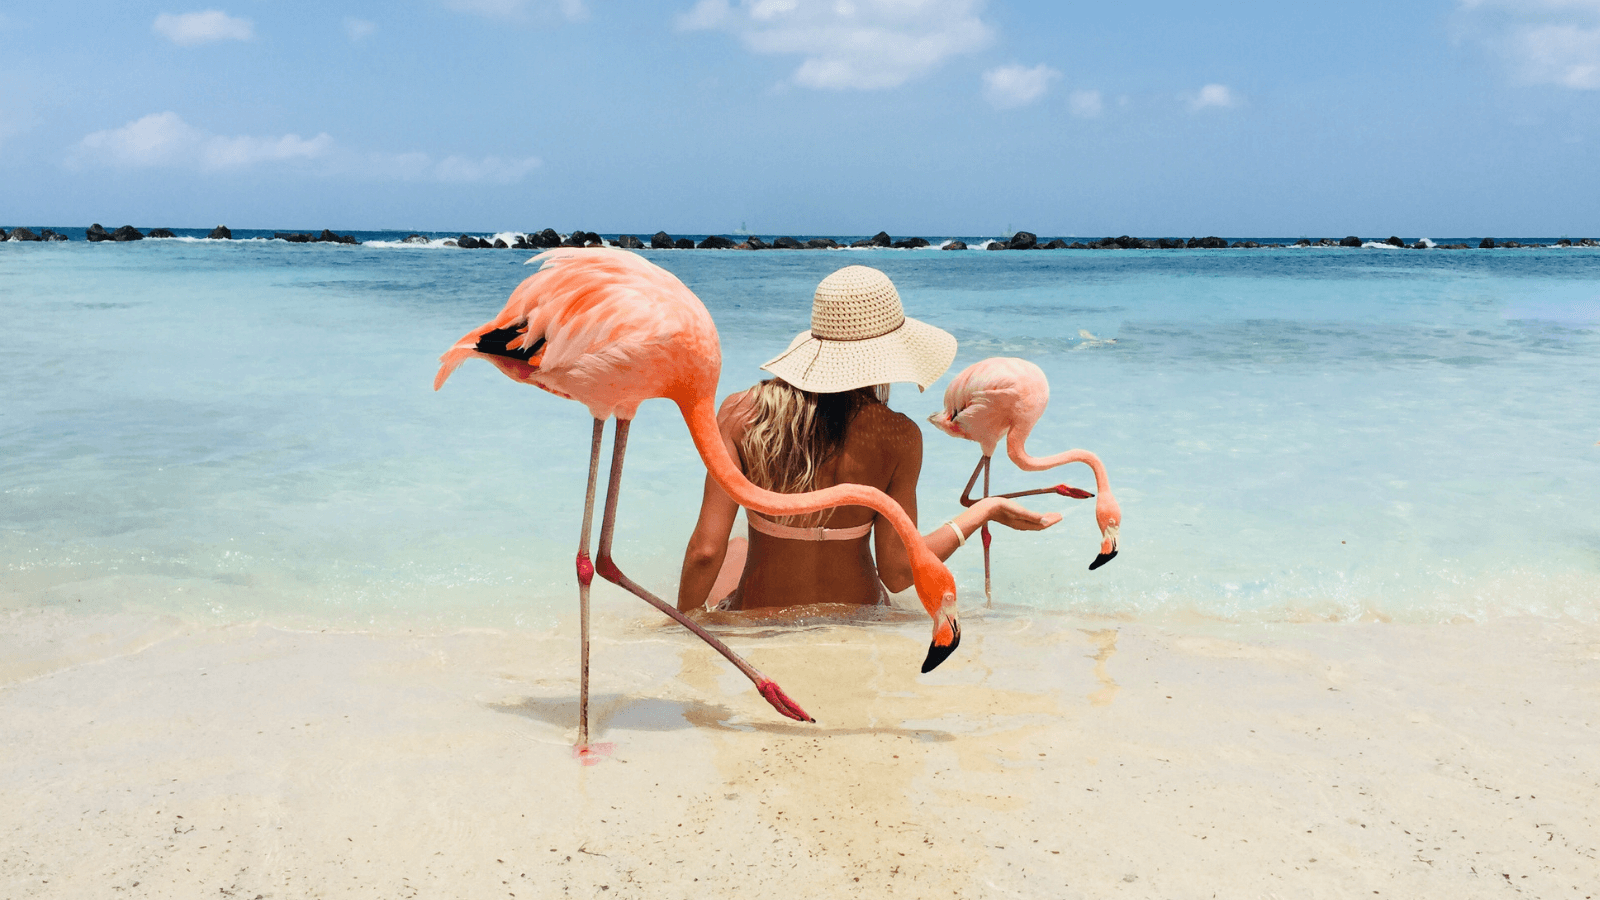 Flamingo Beach in Aruba * A wanderluster’s dream come true. 